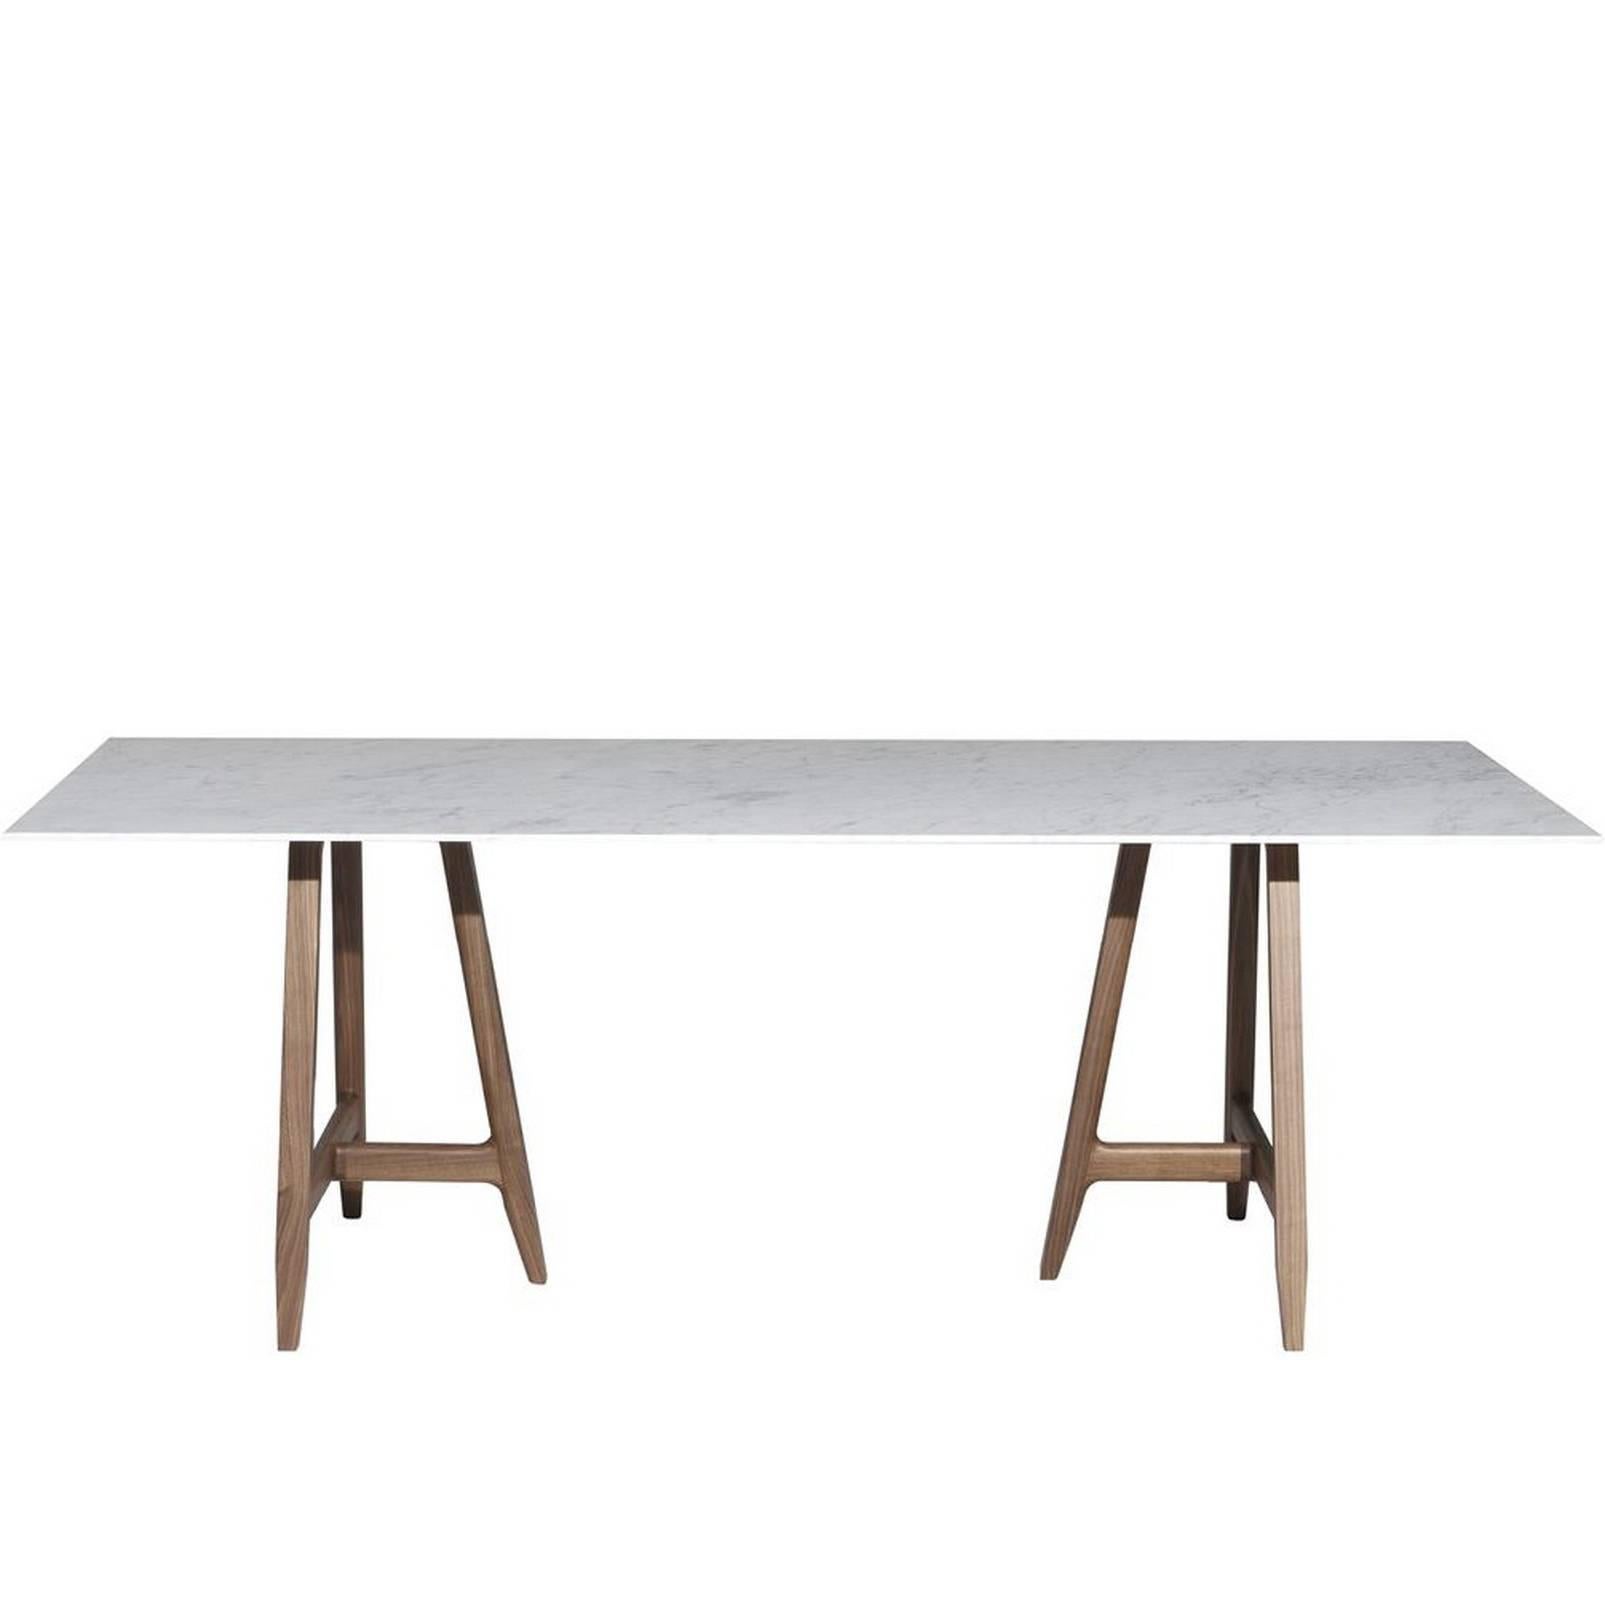 Table "Easel" avec plateau en marbre blanc de Carrare Conçue par L. et R. Palomba pour Driade